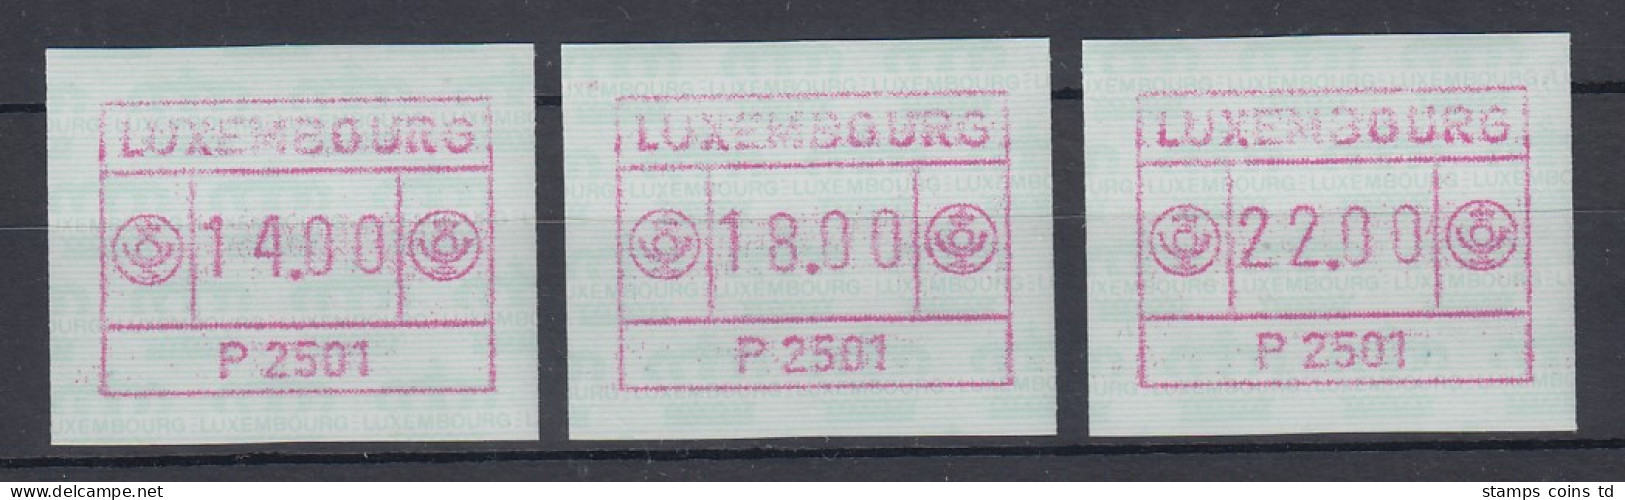 Luxemburg ATM P2501 Rotlila Tastensatz 14-18-22 **   - Frankeervignetten